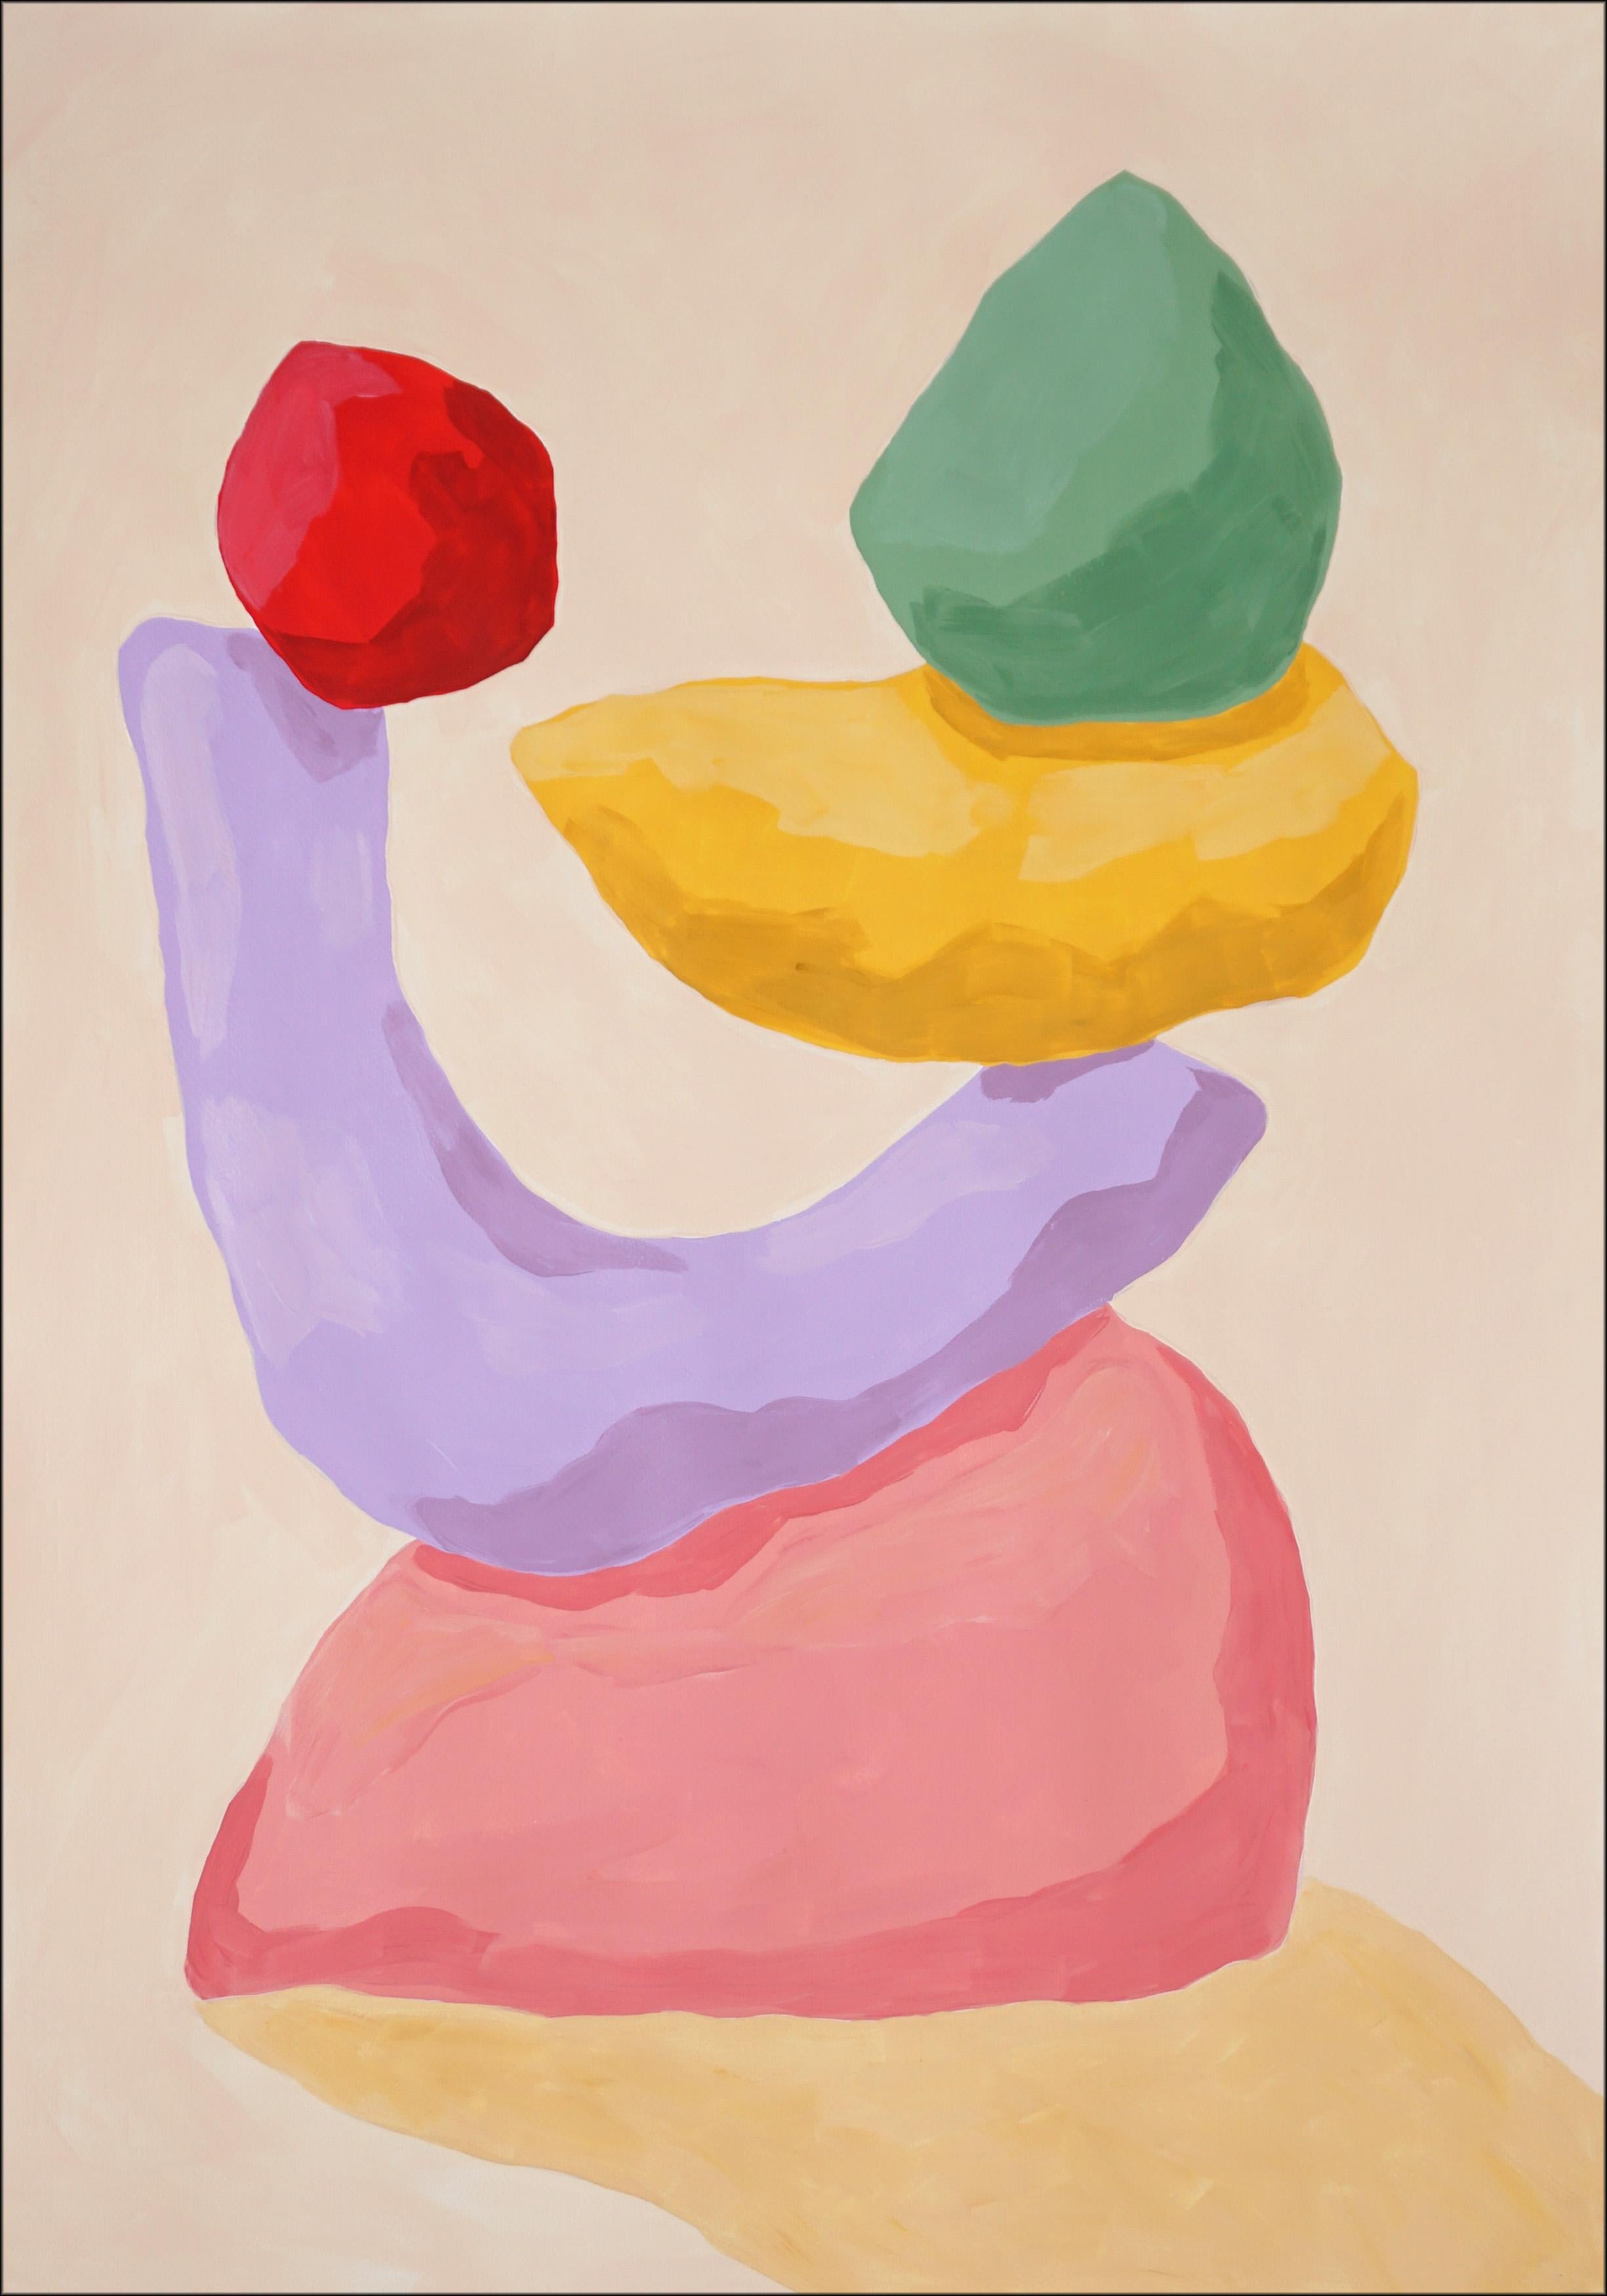 Portrait Painting Ryan Rivadeneyra - Sculpture de jardin, palette pastel, formes de rendu abstrait rose, jaune